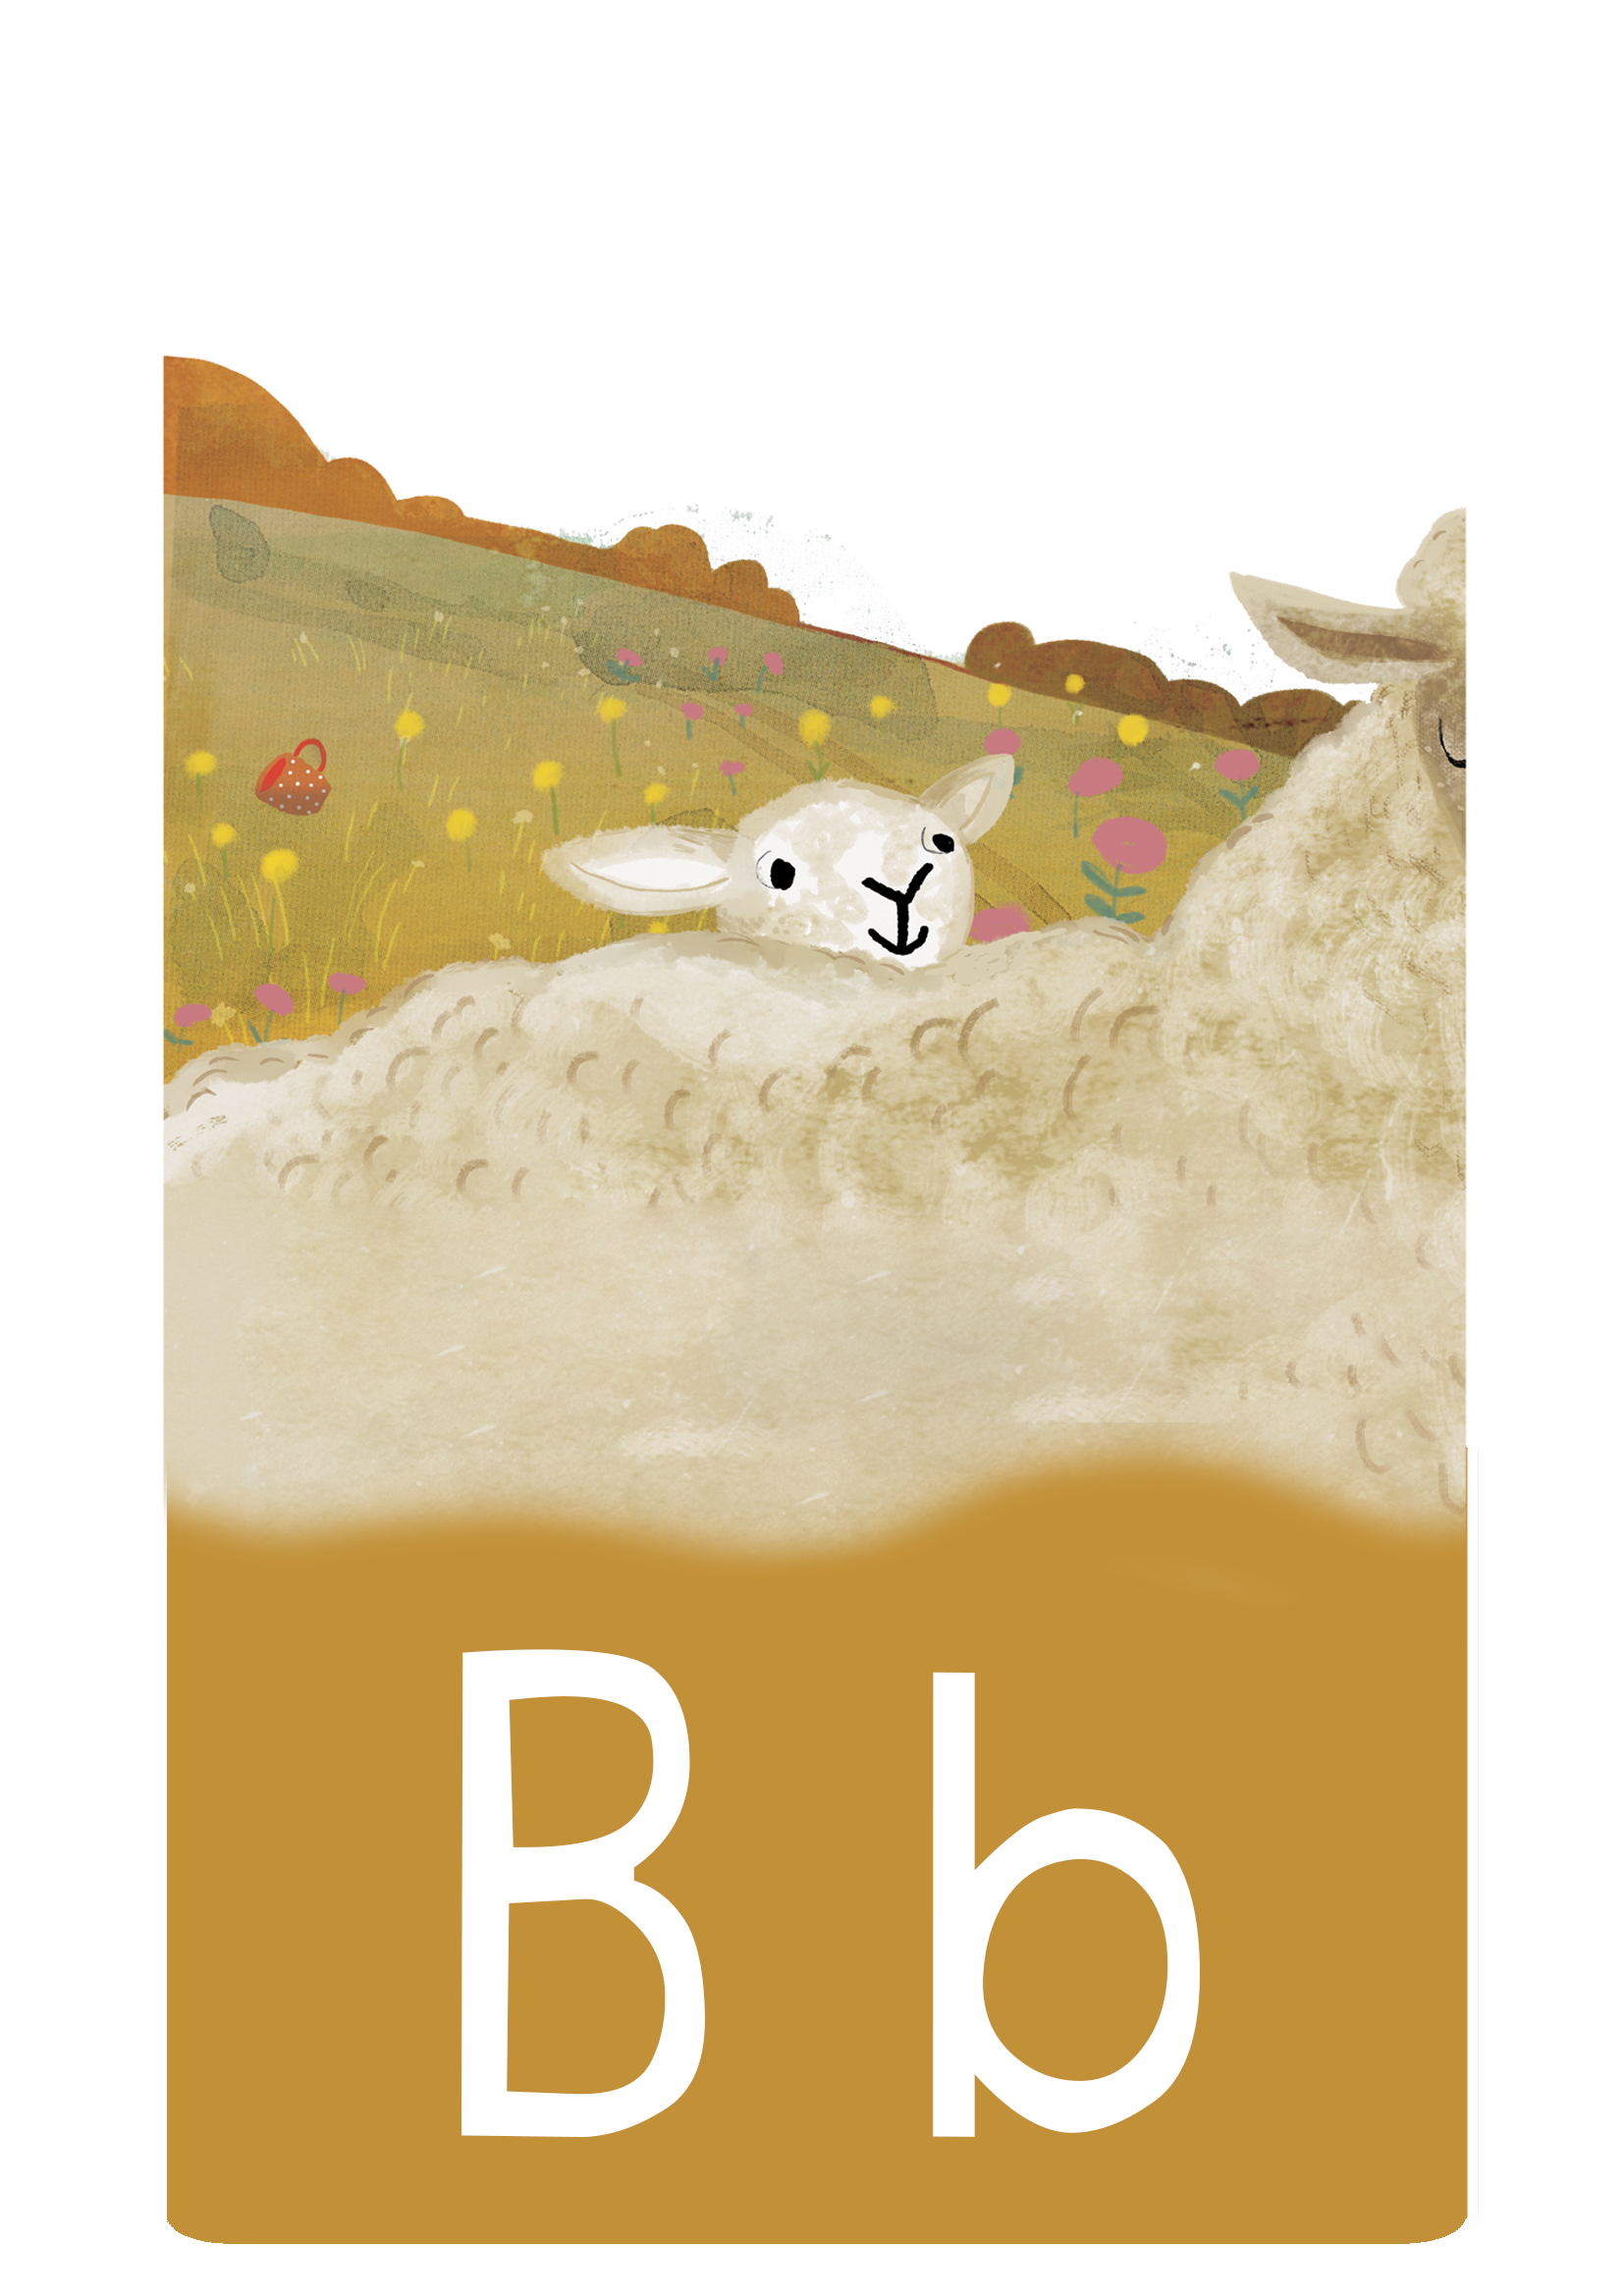 B betű - ABC kuckó böngésző